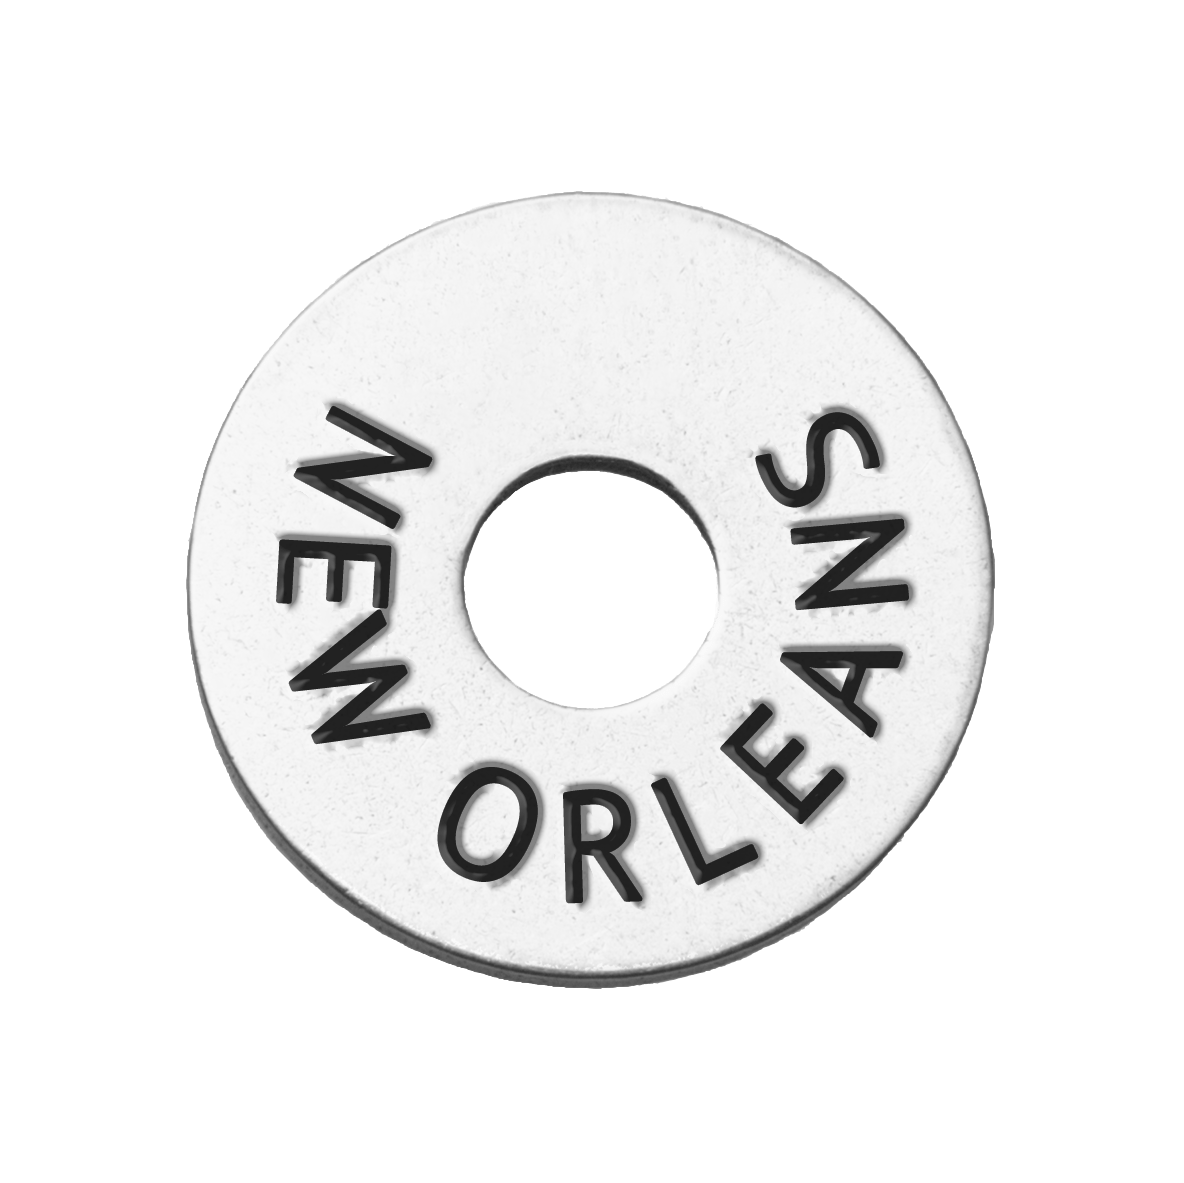 15 Most Unique New Orleans Souvenirs